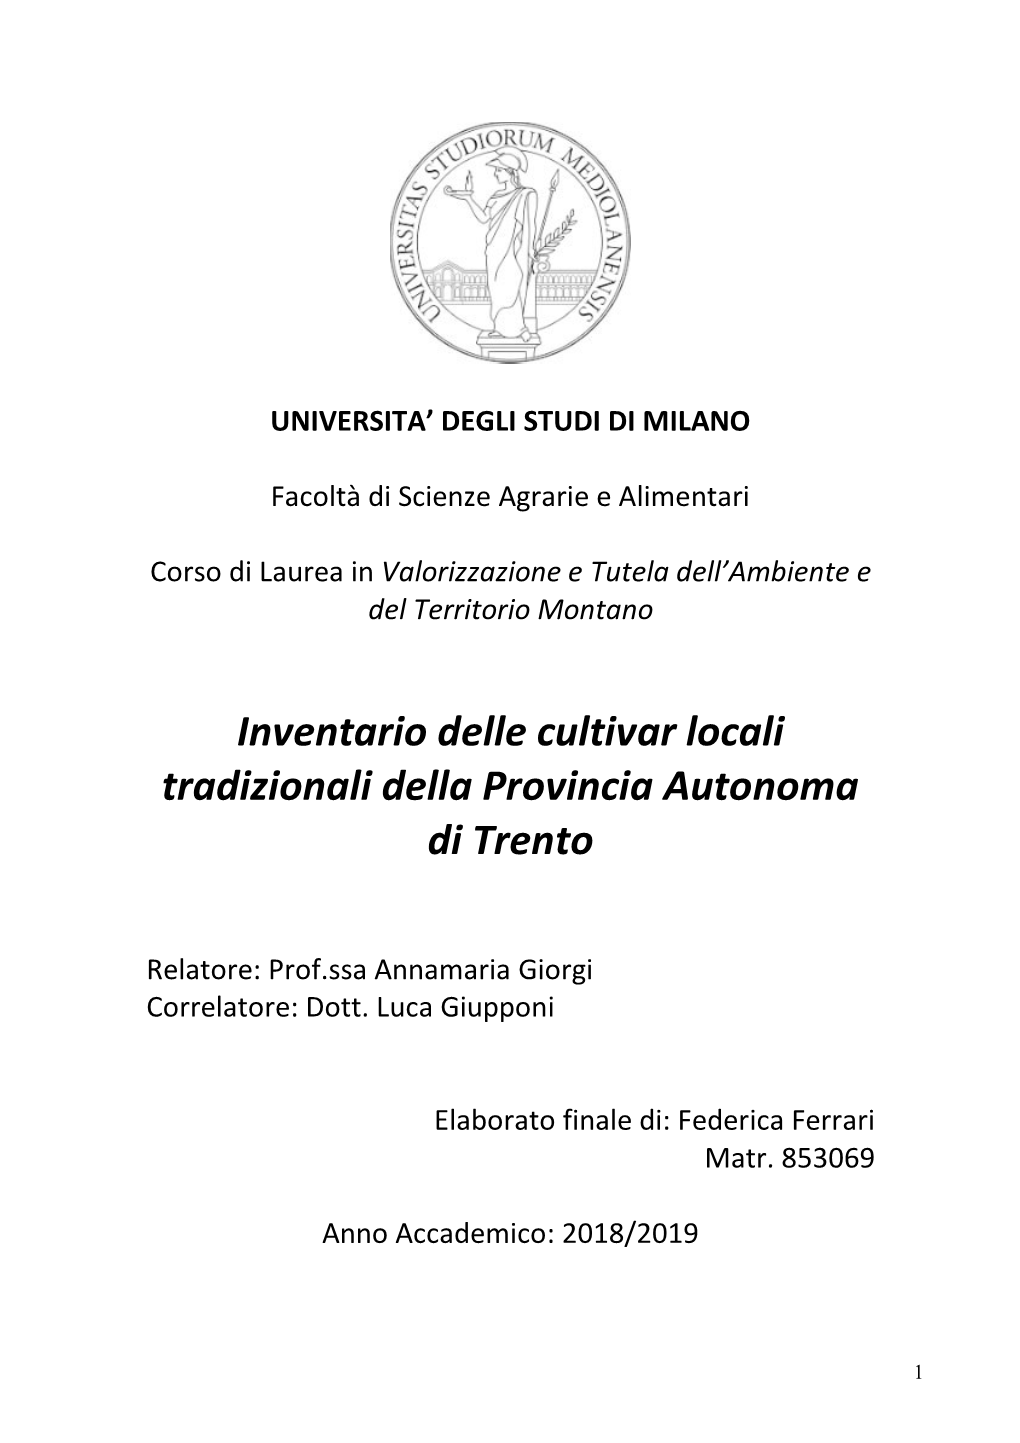 Inventario Delle Cultivar Locali Tradizionali Della Provincia Autonoma Di Trento